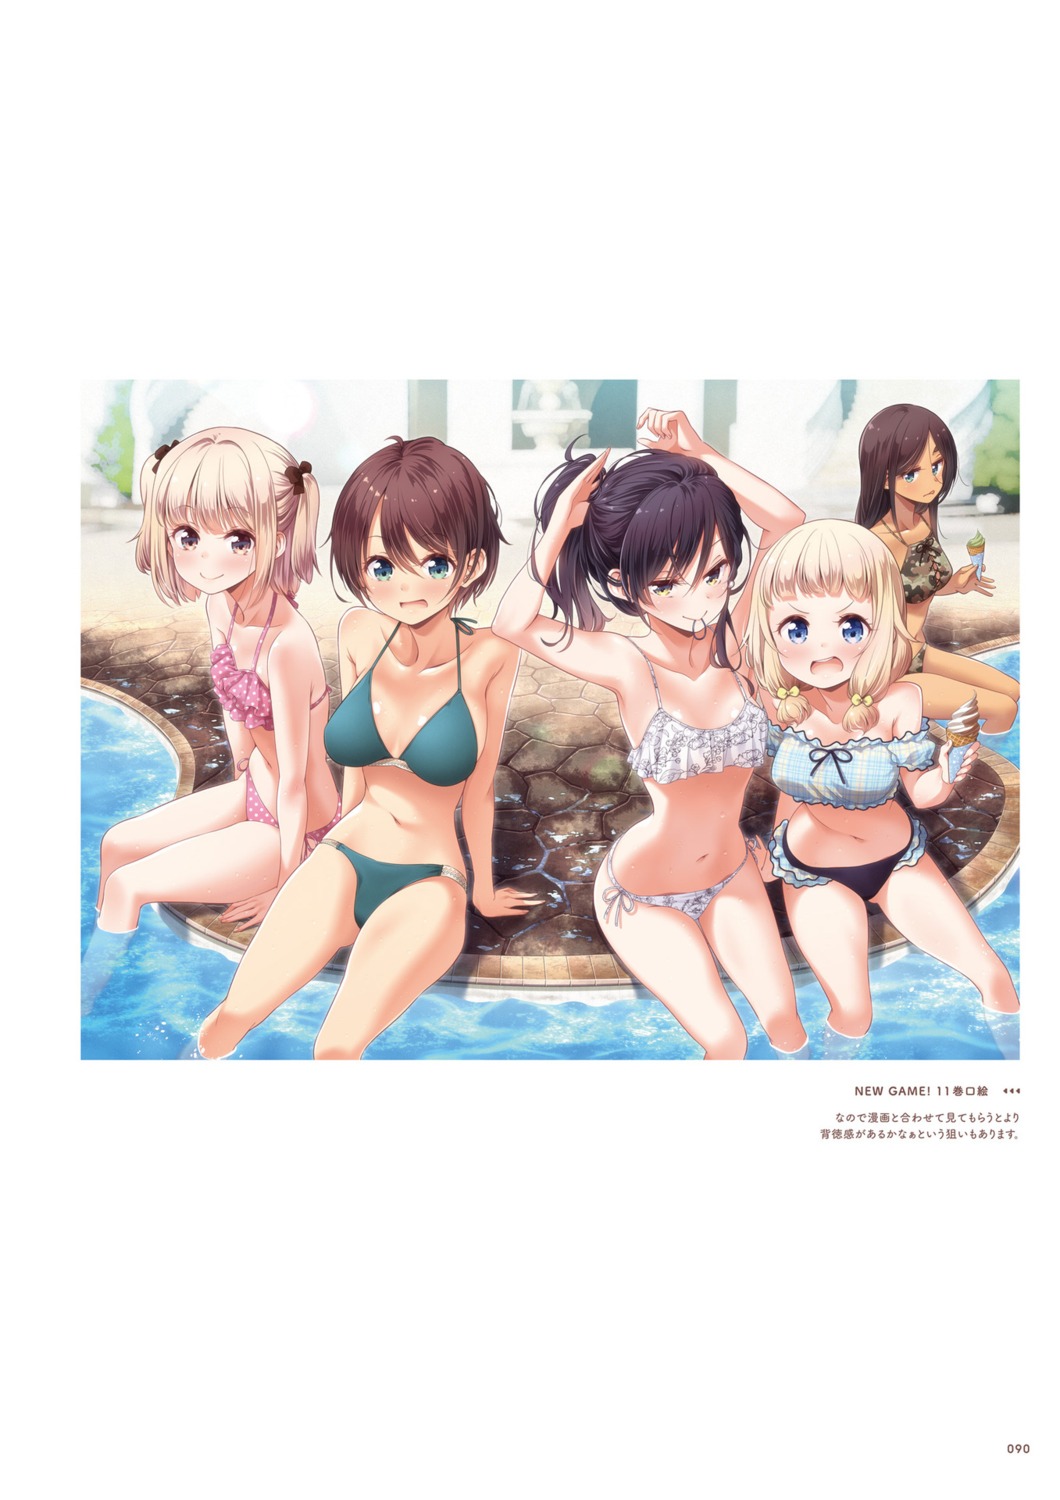 ahagon_umiko bikini iijima_yun narumi_tsubame new_game! sakura_nene shinoda_hajime swimsuits tokunou_shoutarou wet